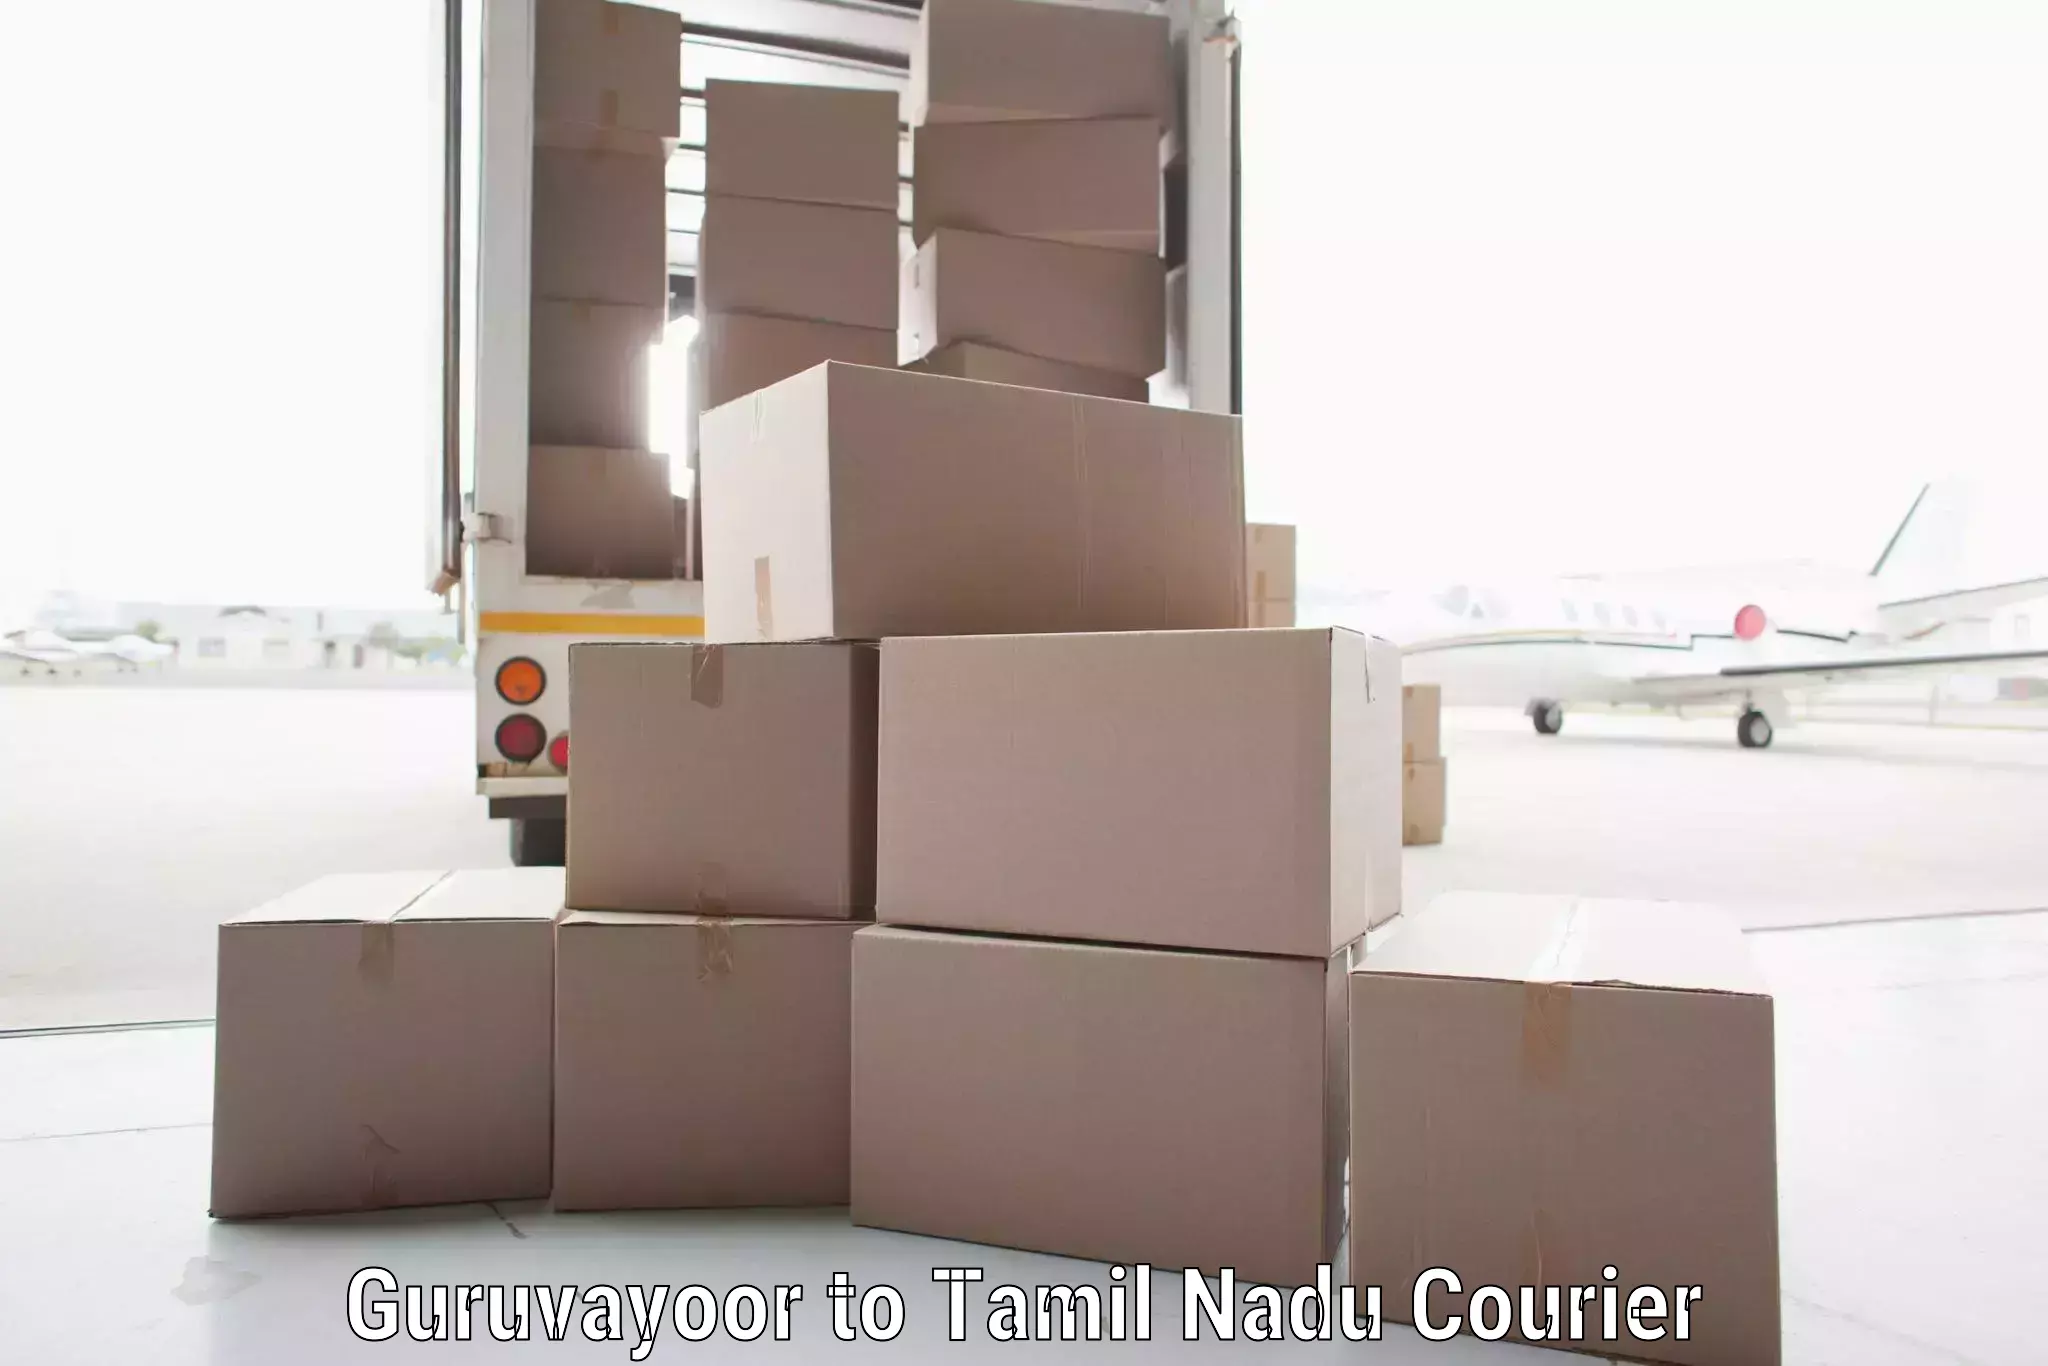 Cargo delivery service Guruvayoor to Thuraiyur